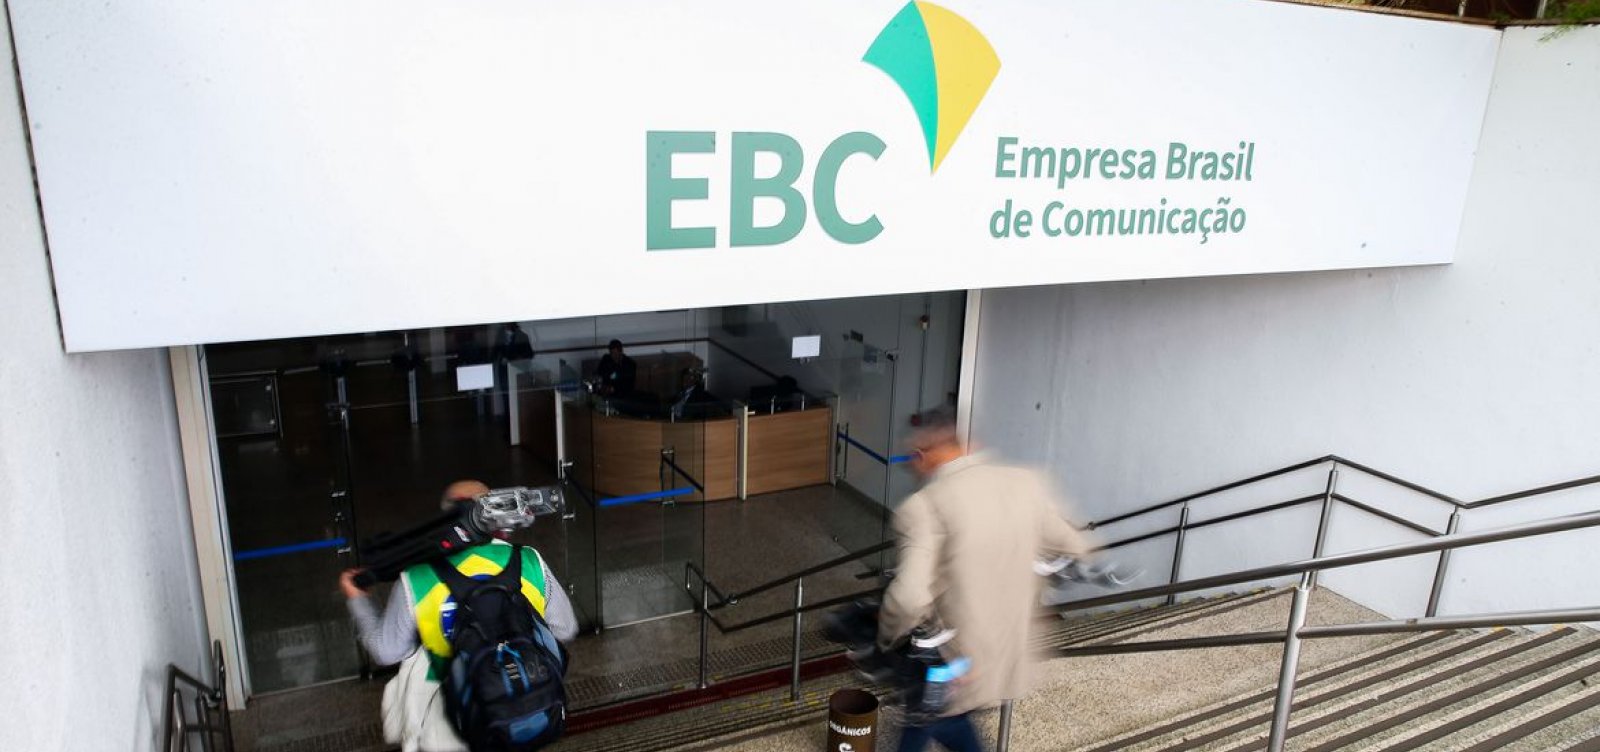 Dossiê mostra censura e governismo em reportagens da EBC, ligada ao governo federal